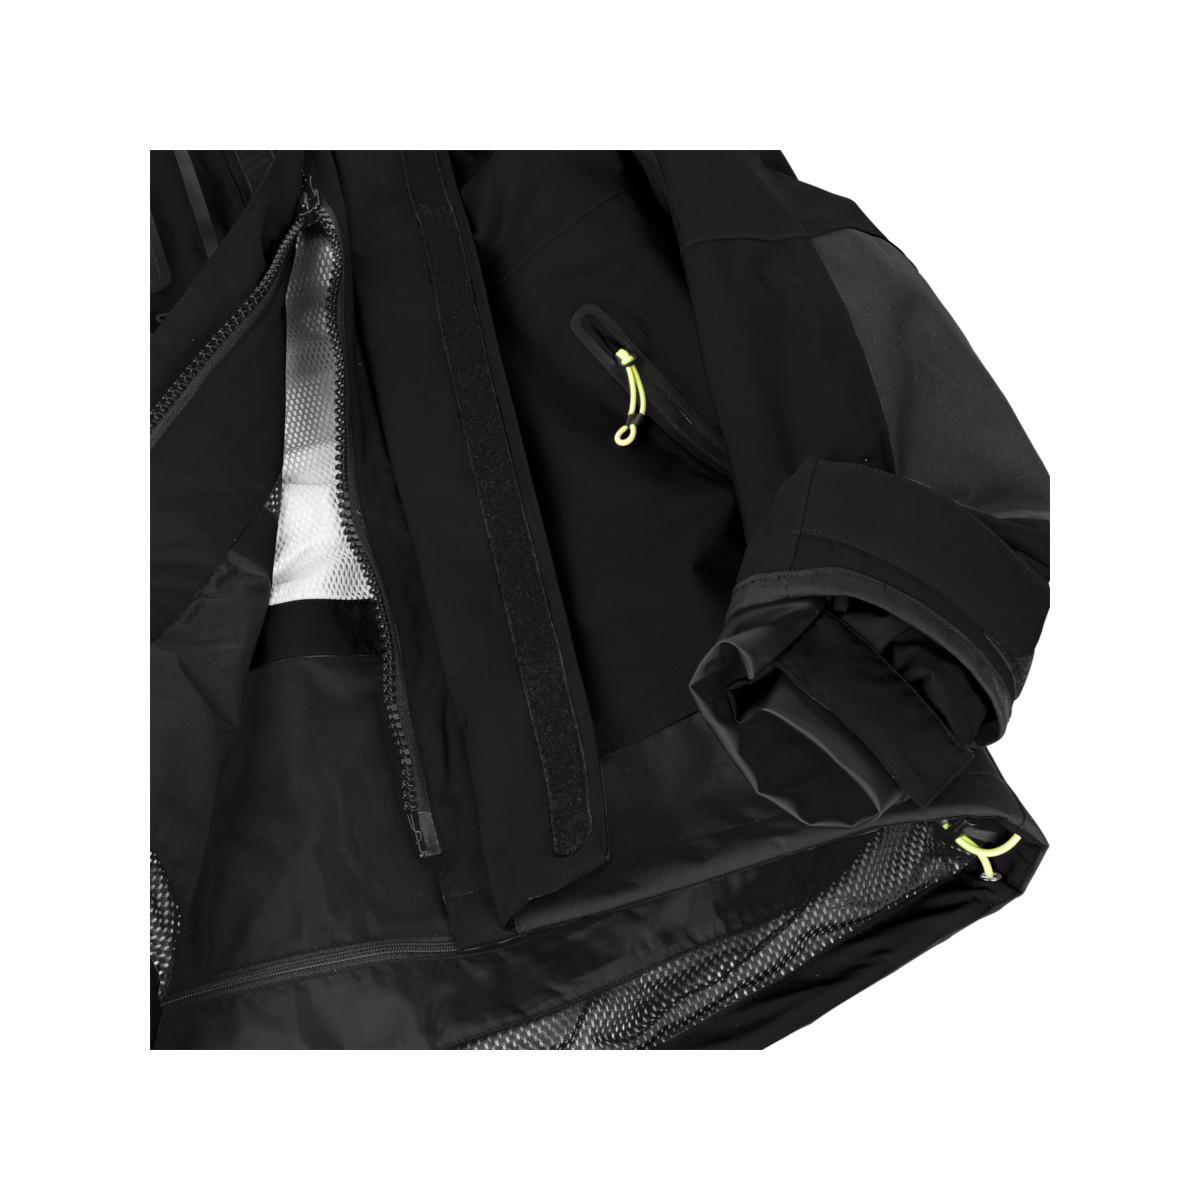 12skipper Magellan veste de quart hauturière, unisexe - noir, taille L